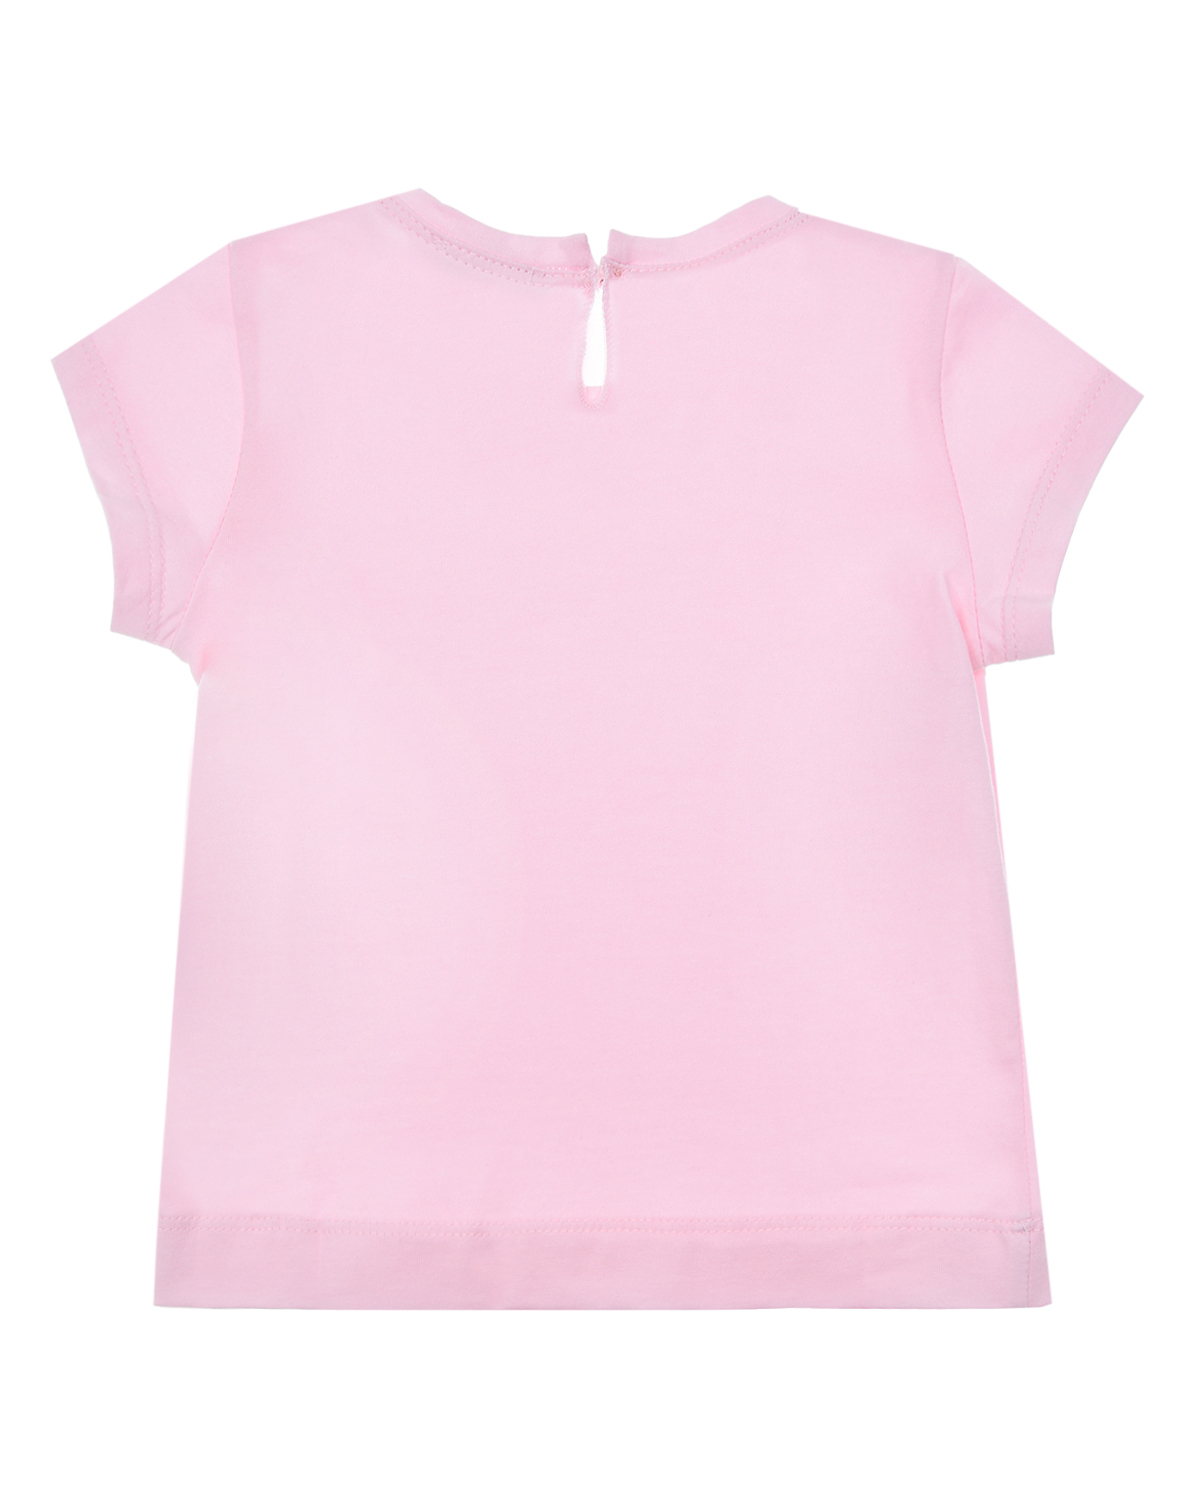 Розовая футболка со стразами Monnalisa детская, размер 92, цвет розовый - фото 2